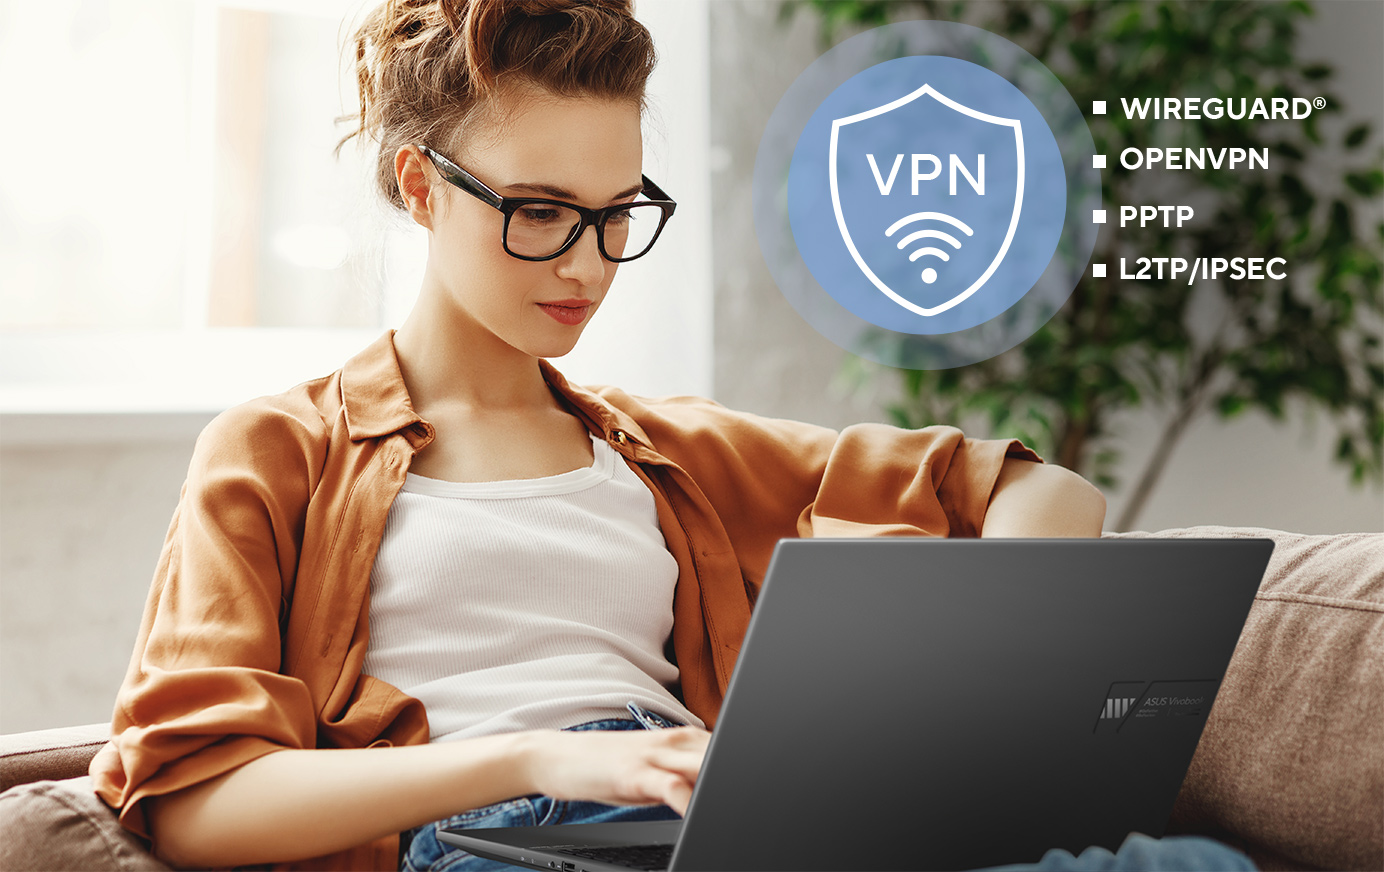 Routery ASUS podporují řadu bezpečnostních protokolů VPN, včetně WireGuard®, OpenVPN, PPTP a L2TP/IPSec.